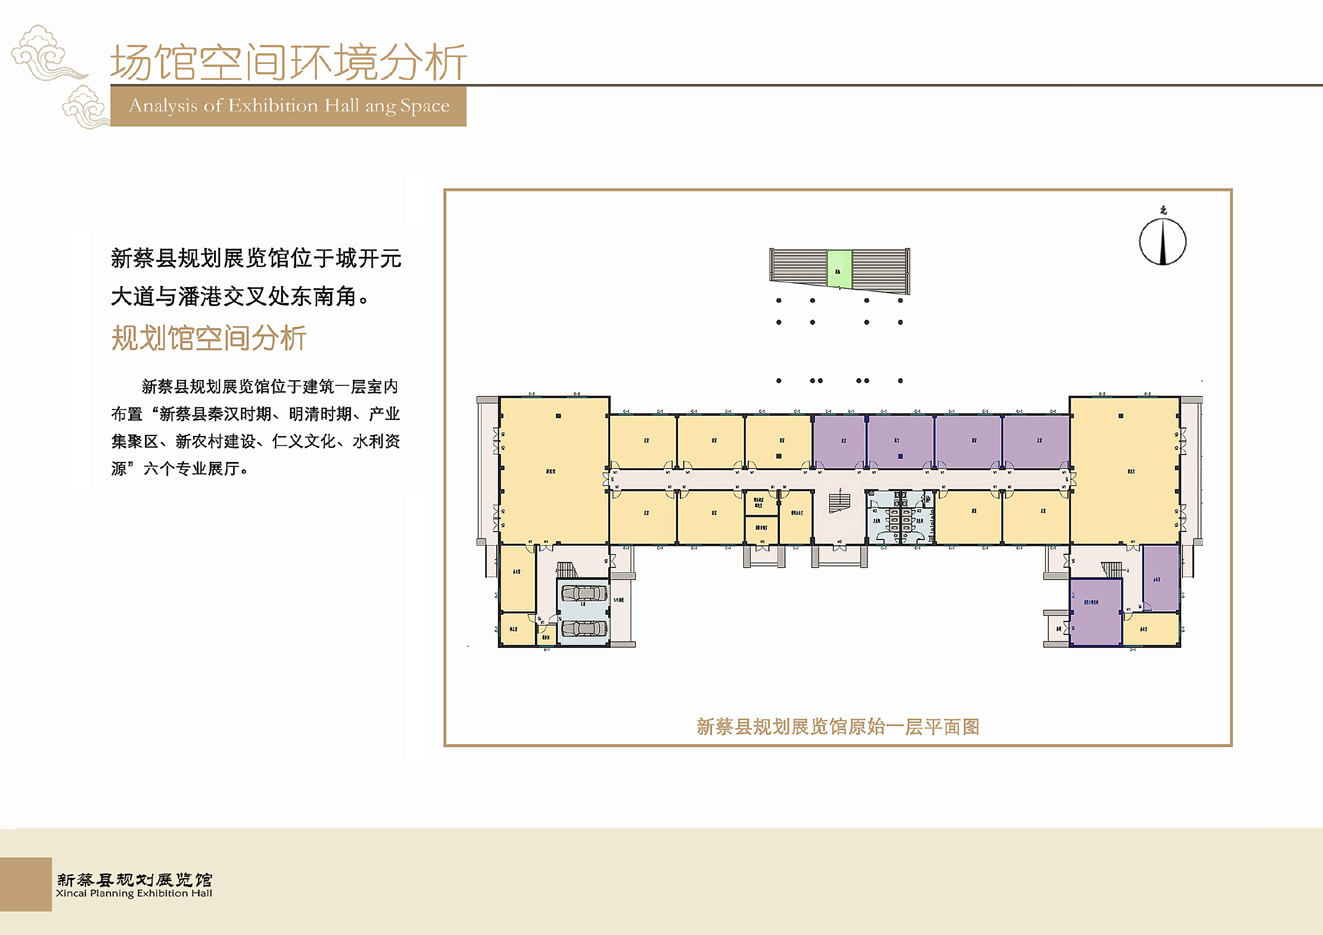 【河南】新蔡规划展览馆布展设计项目方案JPG